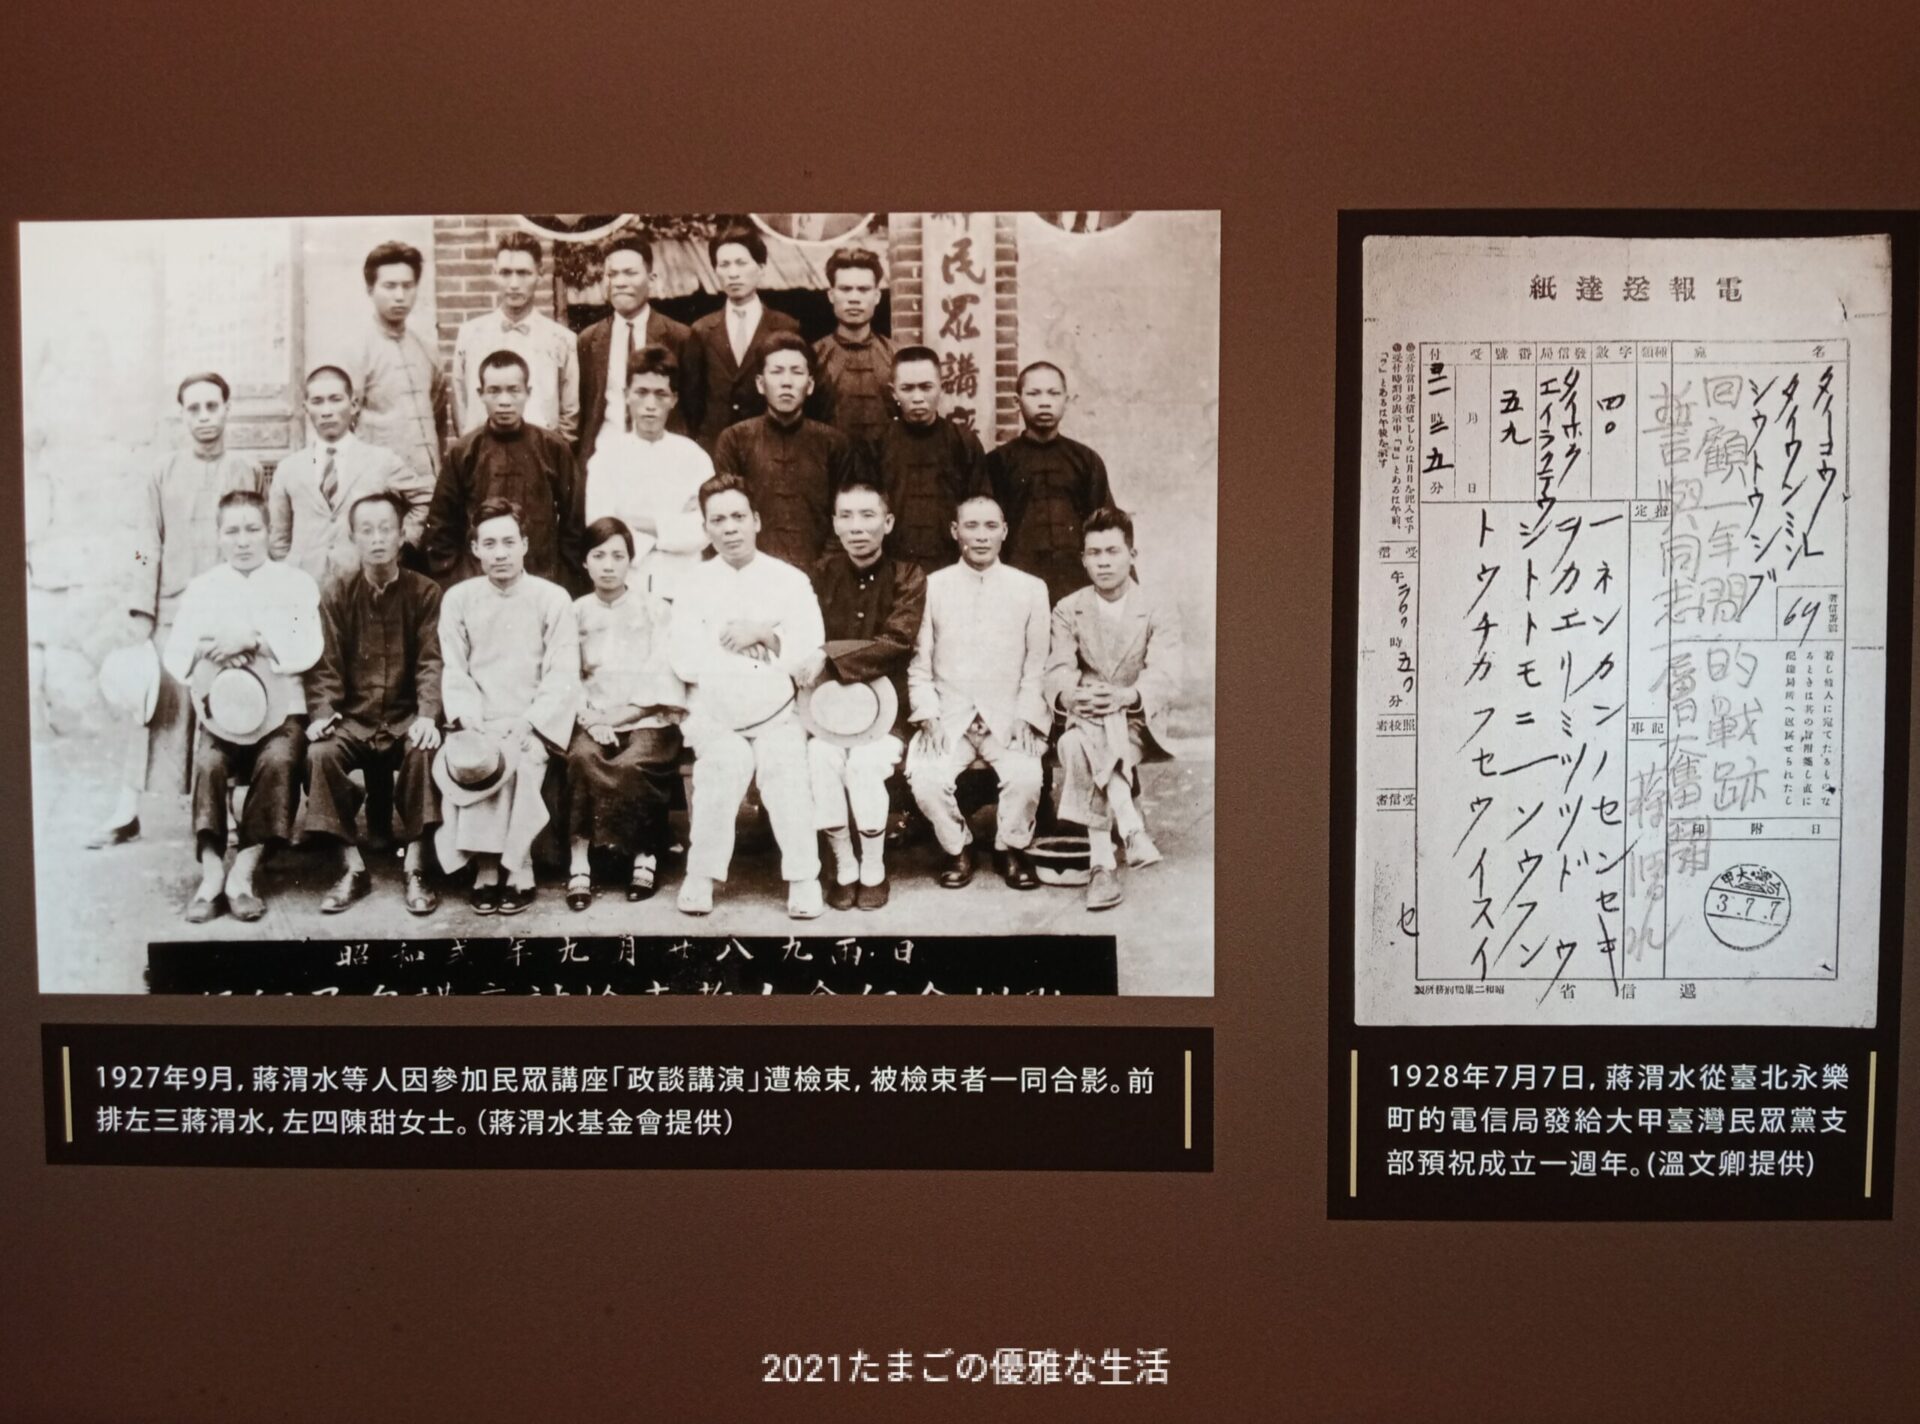 日本時代の牢屋に入った!水牢も|台灣新文化運動紀念館(旧台北北警察)